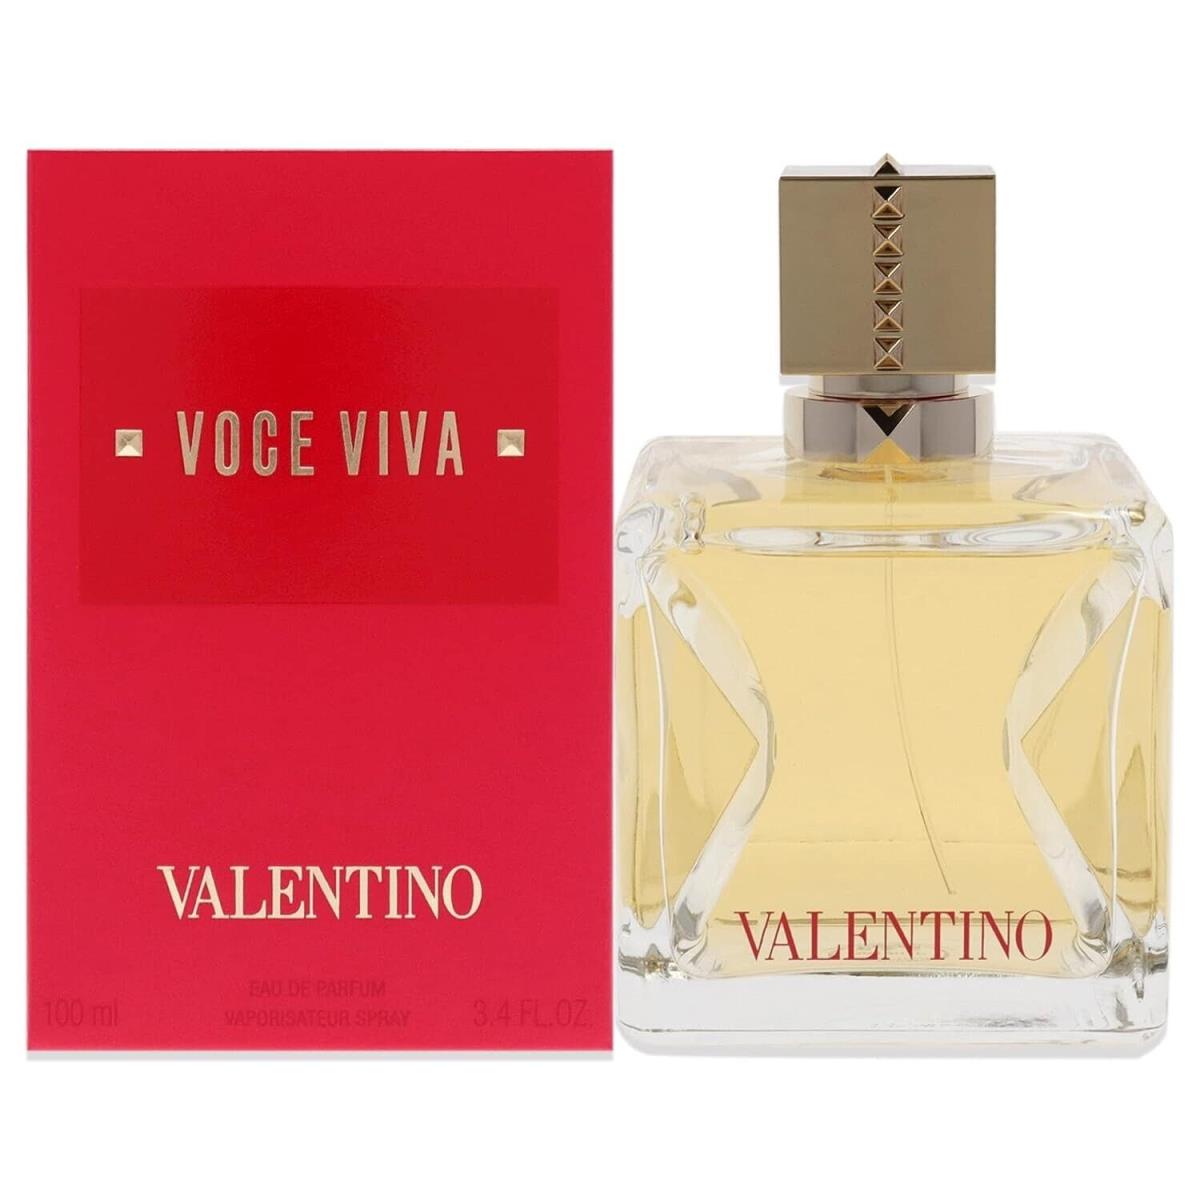 Valentino Voce Viva Eau de Parfum Spray 3.4-oz